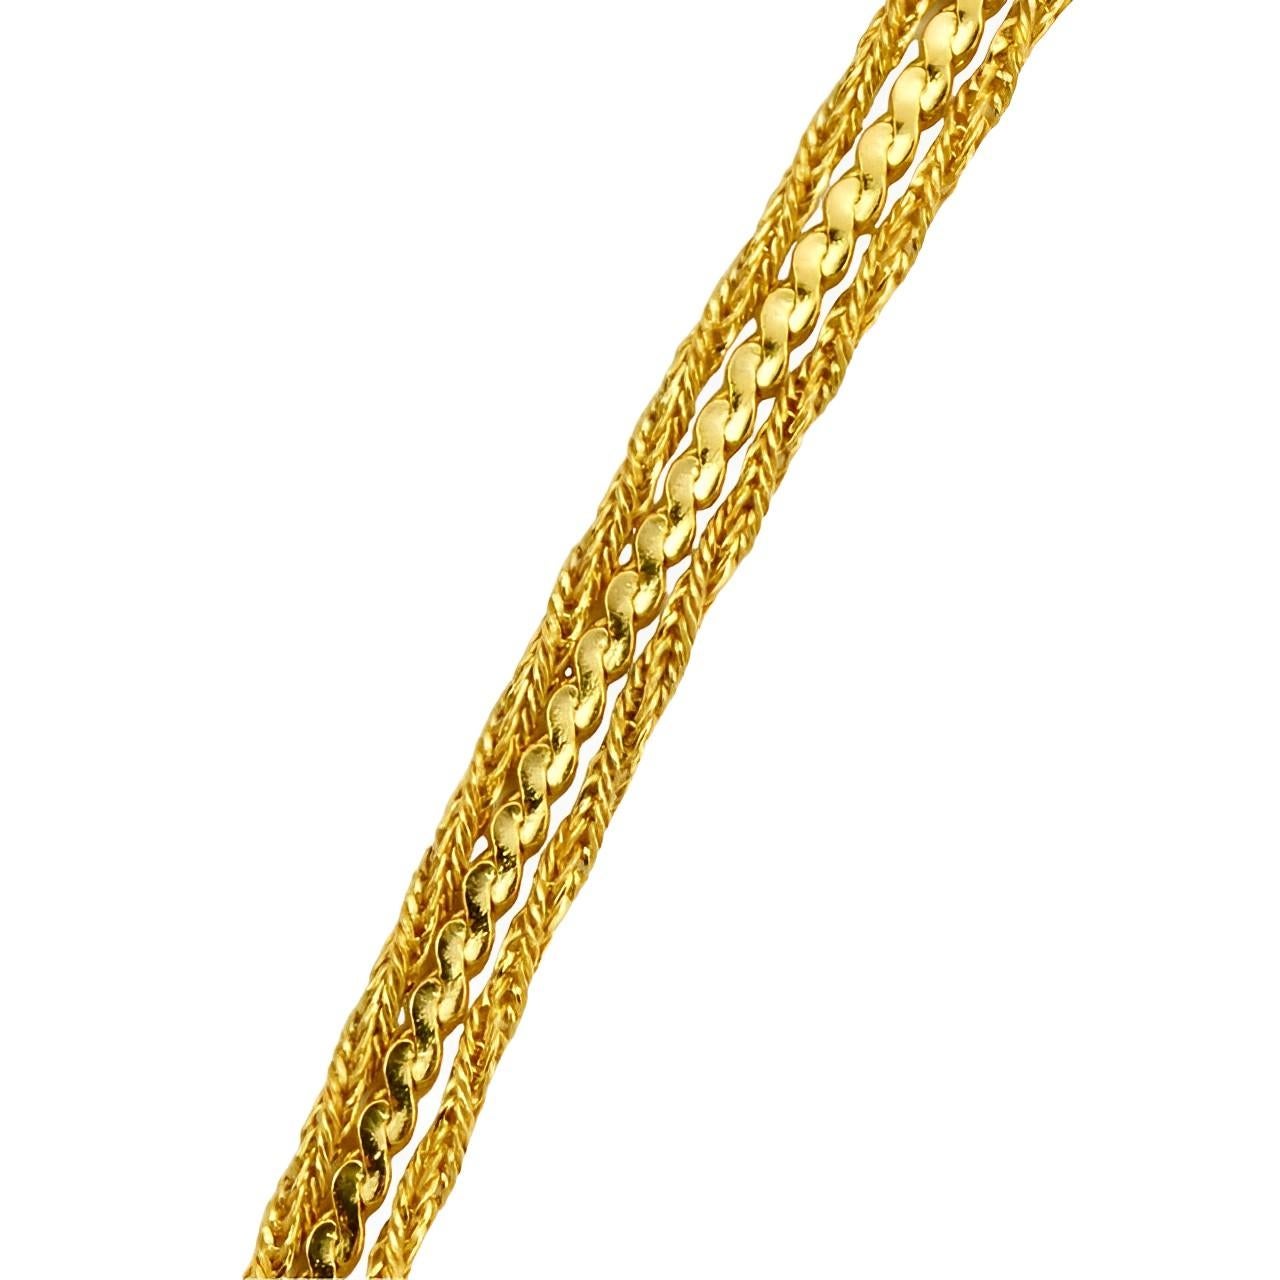 Michelle René propose un joli collier à trois brins en plaqué or, composé d'une chaîne serpentine et de deux chaînes en corde. Longueur approximative de 40 cm. Le collier est en très bon état.

Ce magnifique collier vintage date des années 1980.